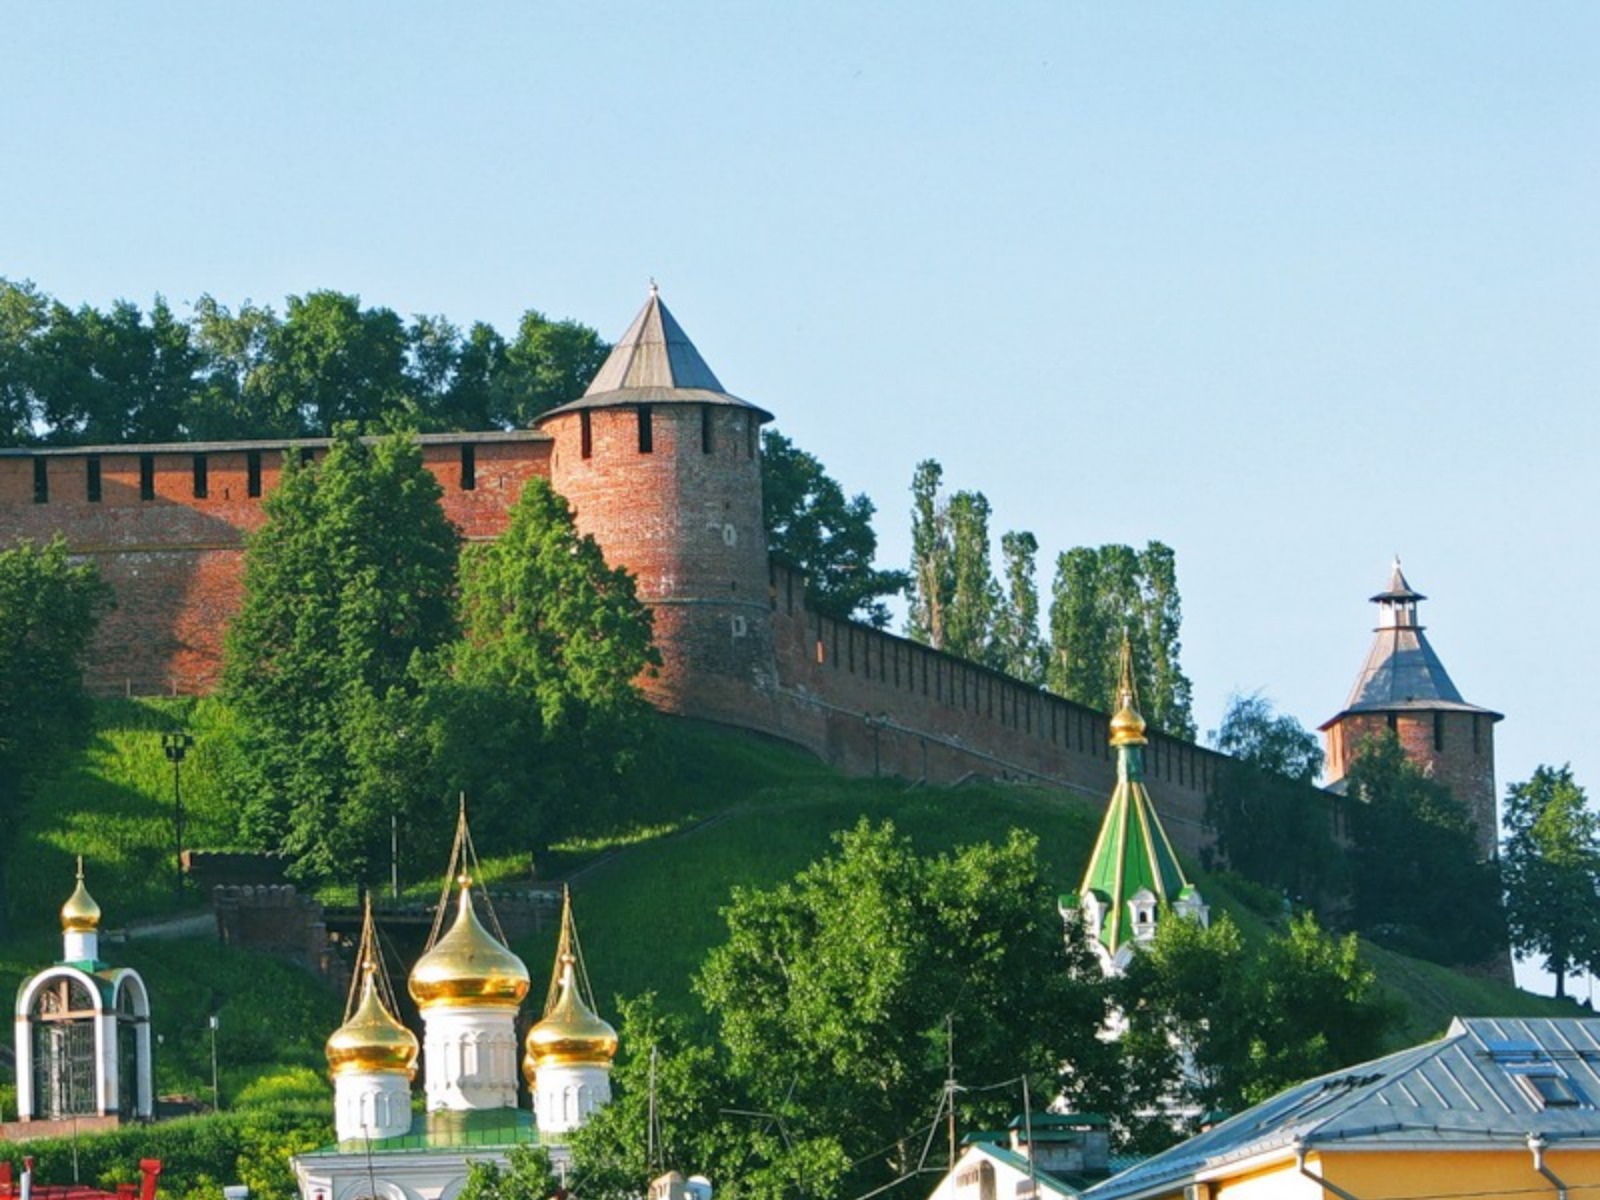 Нижний базар или Нижний посад под стенами Кремля  